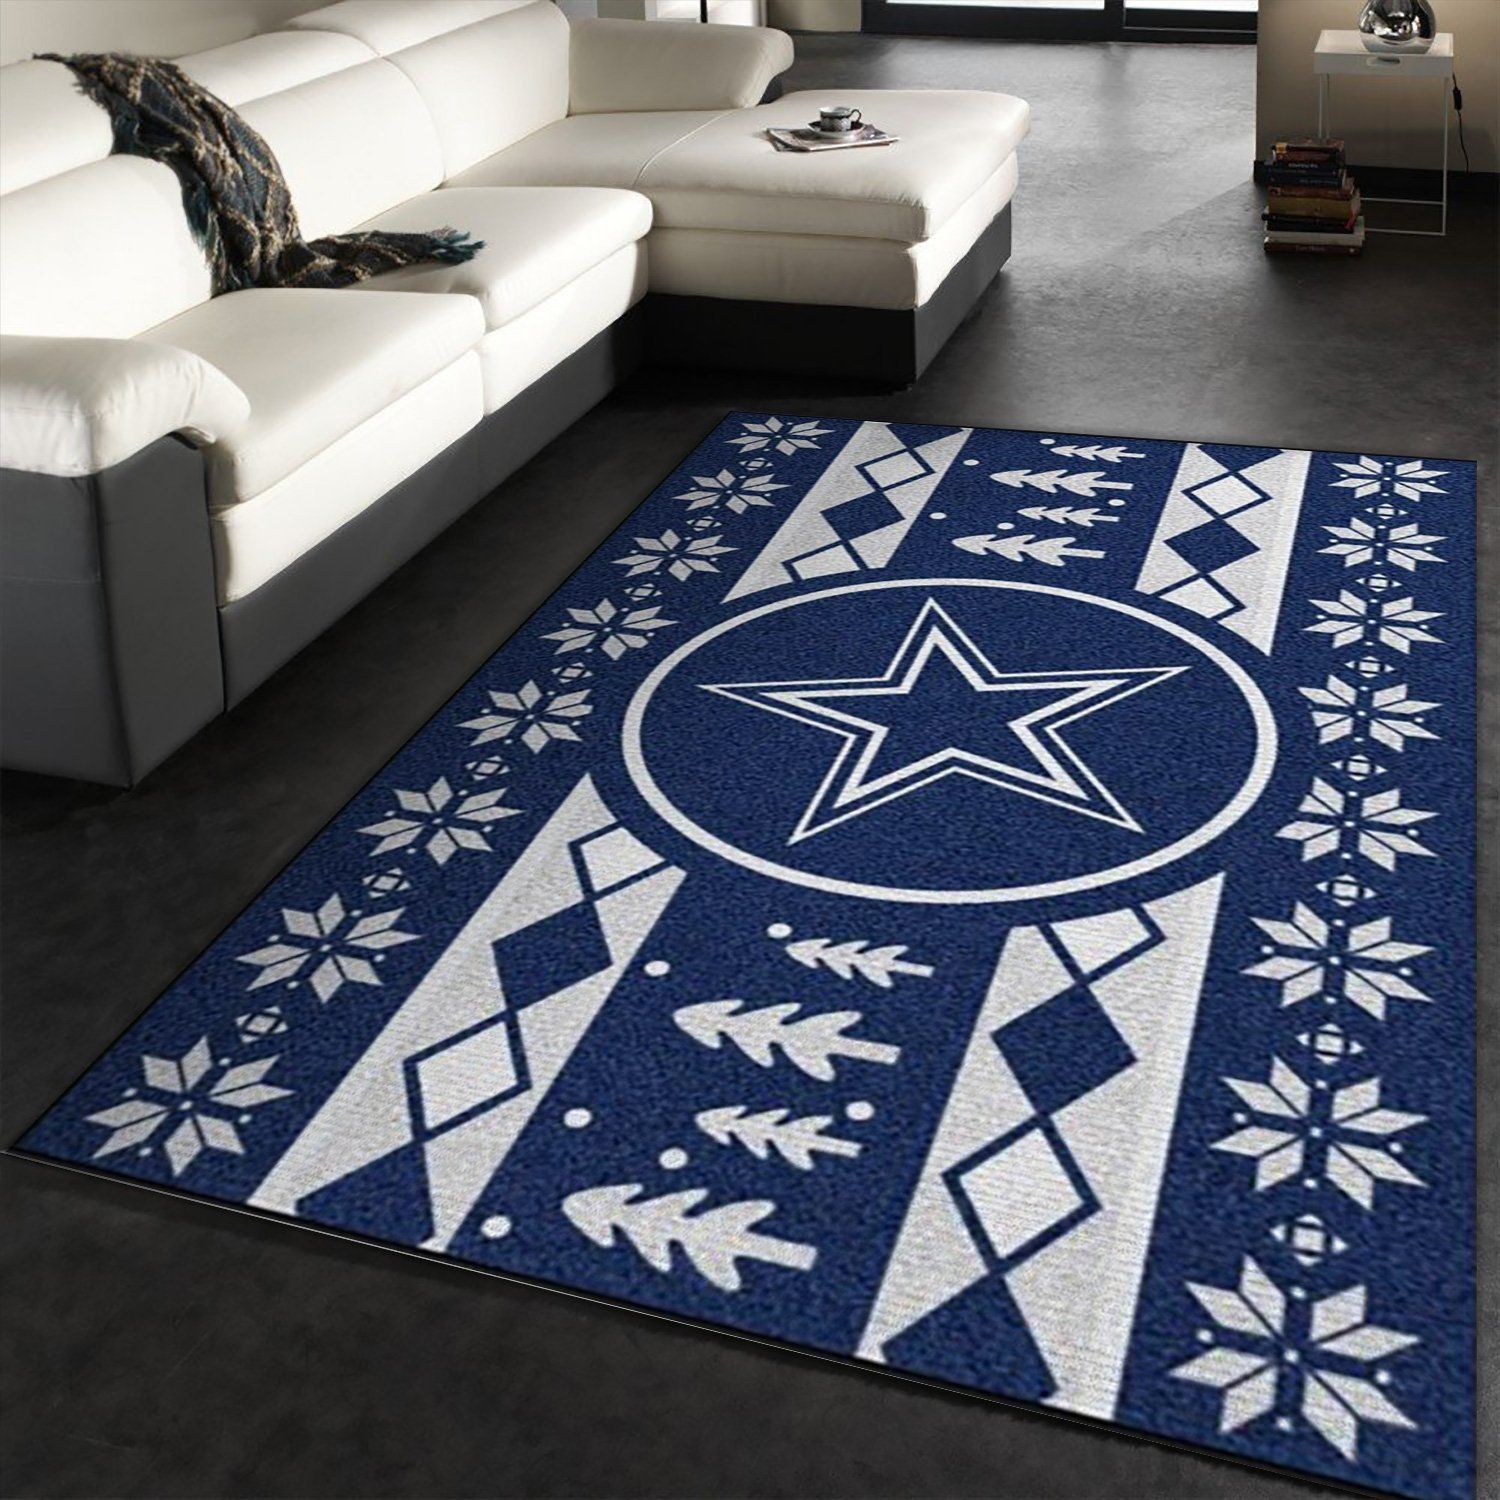 Dallas Cowboys Nfl Area Rug Carpet